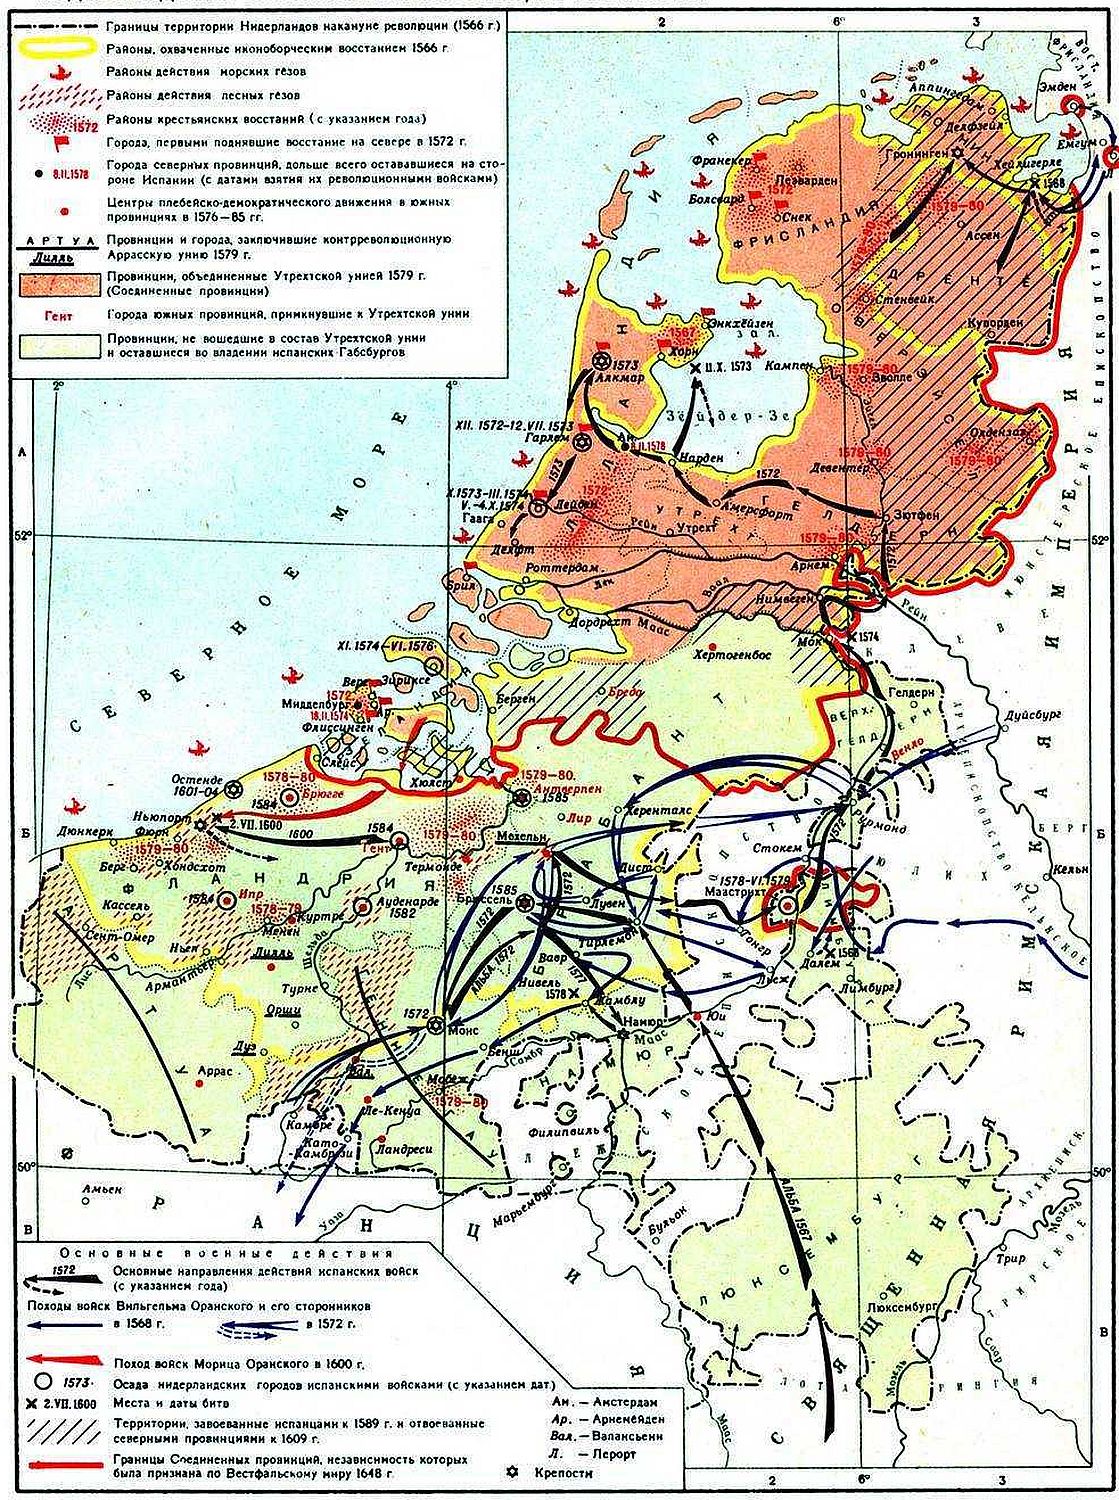 Освободительной борьбы нидерландов против испании. Революция в Нидерландах 1566-1609. Нидерландская буржуазная революция 1566-1609. Карта Нидерландская буржуазная революция 1566-1609.